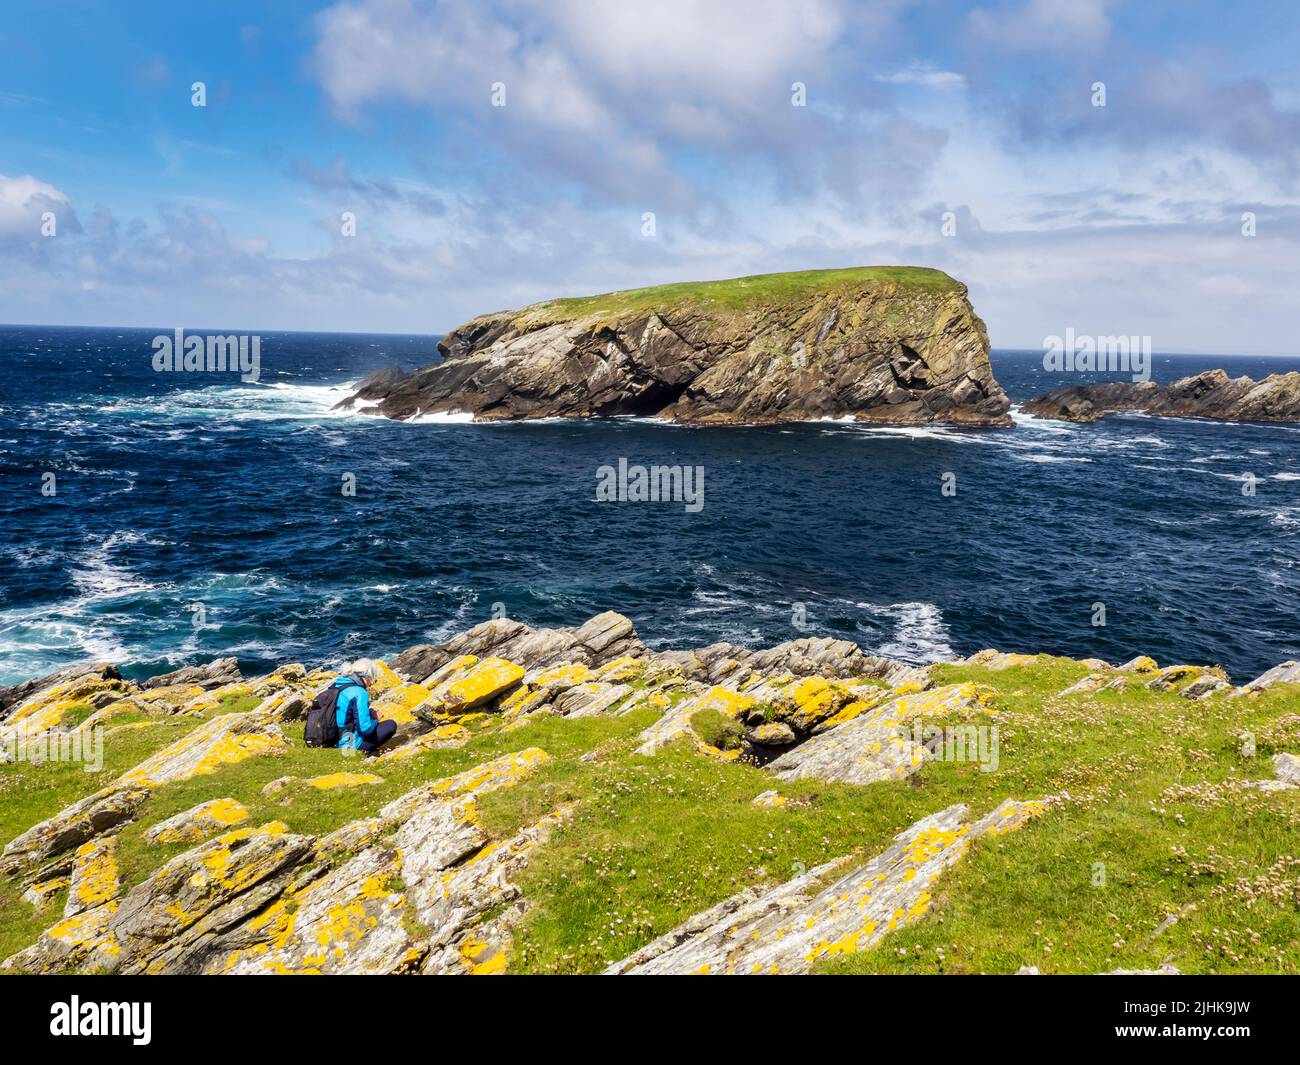 La escarpada costa oeste de la isla de St Ninian, Shetland, Escocia, Reino Unido, mirando a Hich Holm. Foto de stock